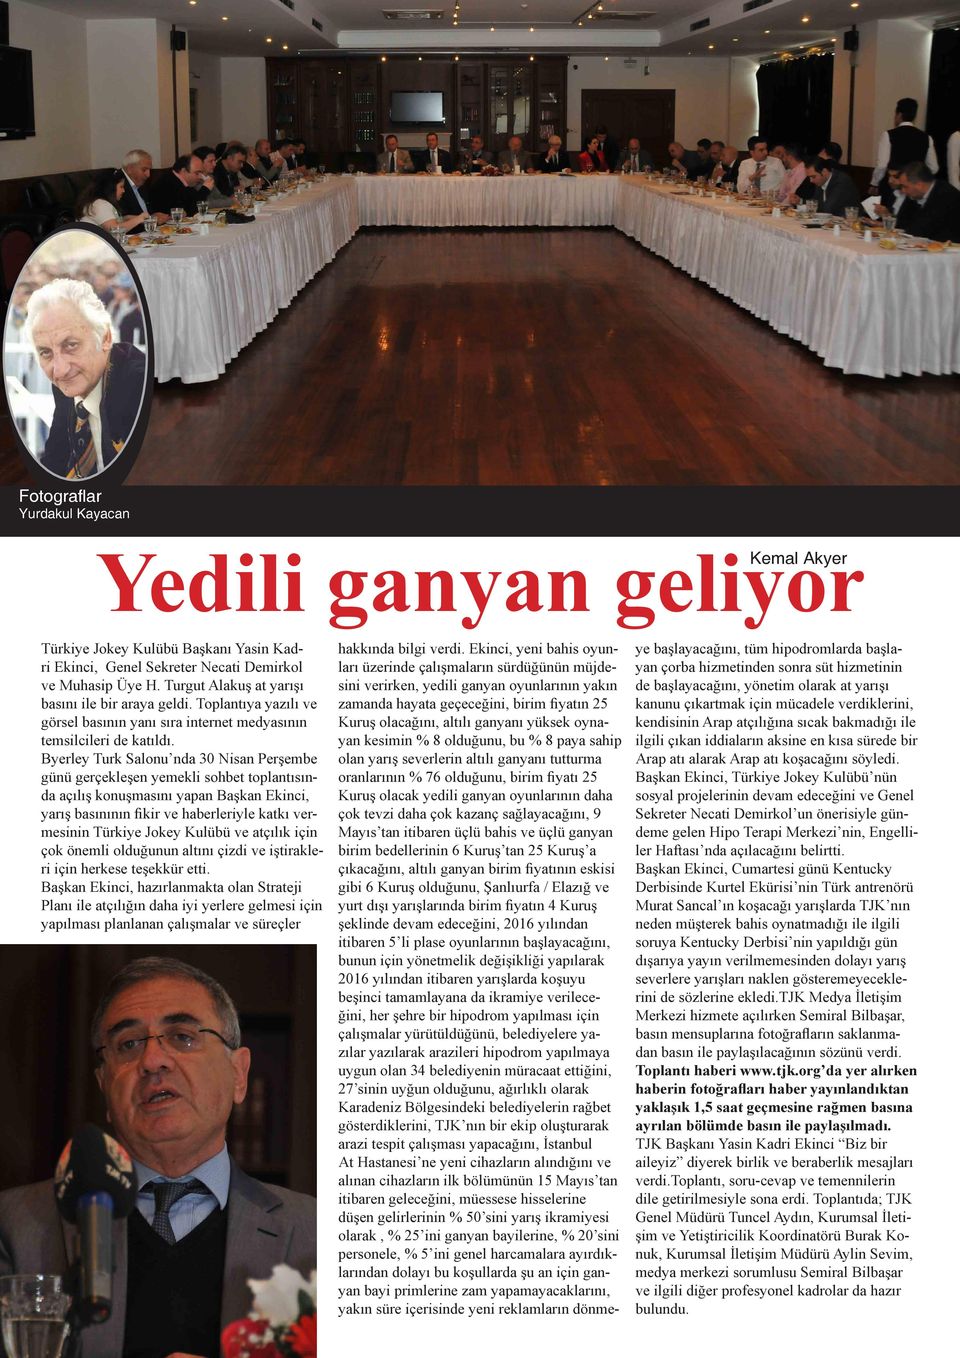 Byerley Turk Salonu nda 30 Nisan Perşembe günü gerçekleşen yemekli sohbet toplantısında açılış konuşmasını yapan Başkan Ekinci, yarış basınının fikir ve haberleriyle katkı vermesinin Türkiye Jokey